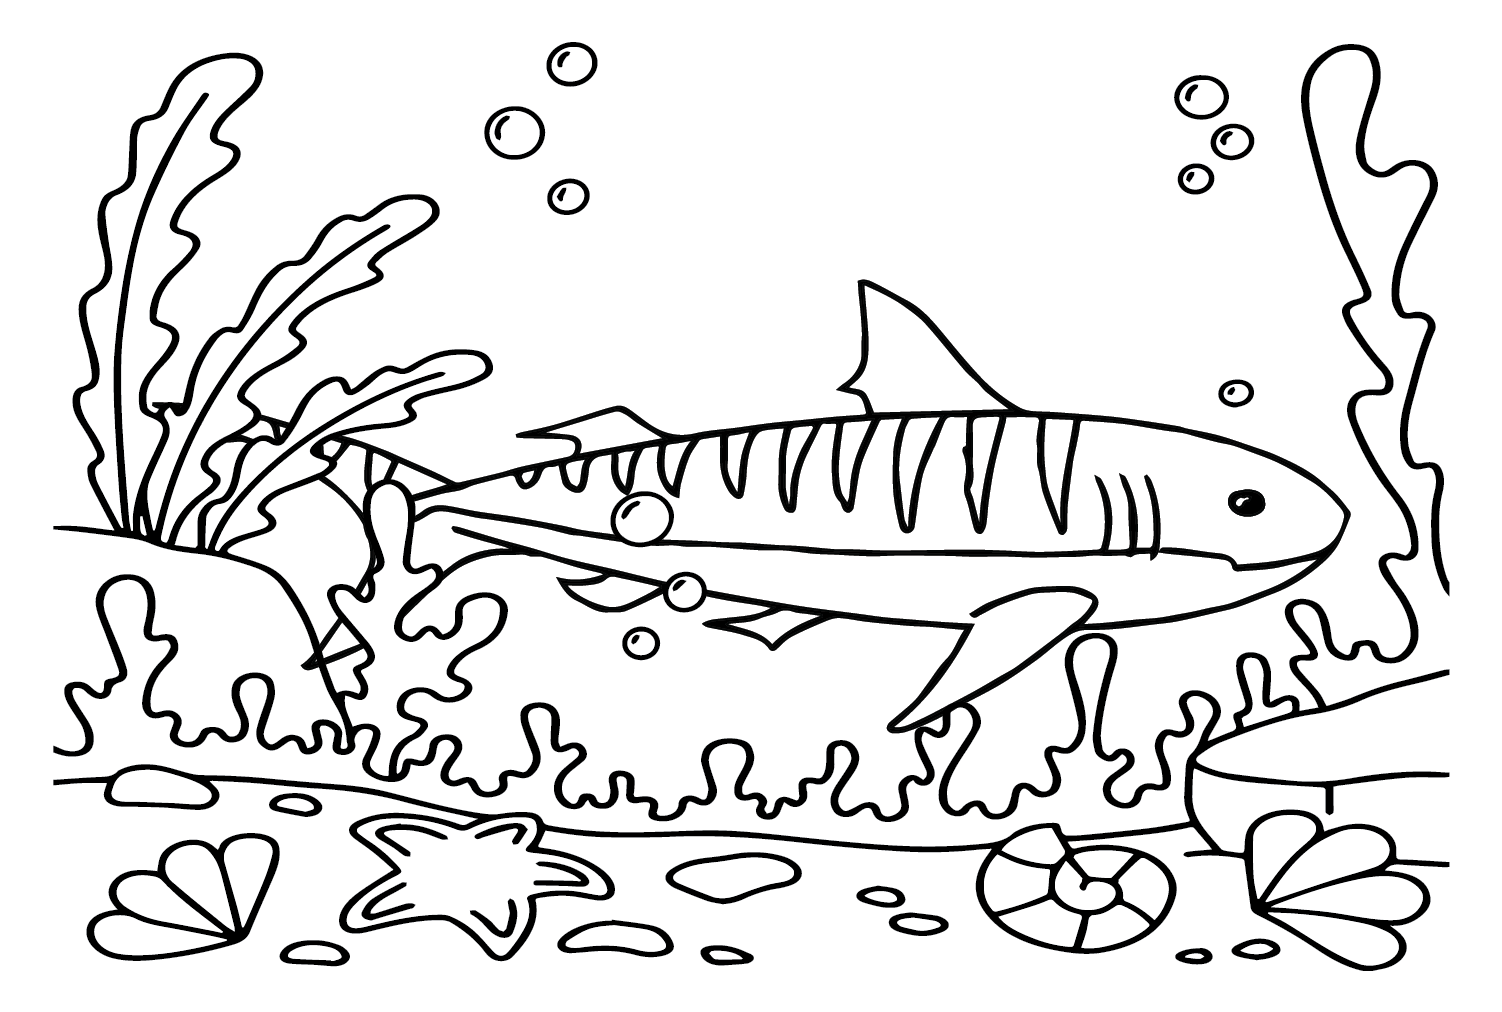 Big tiger shark coloring page